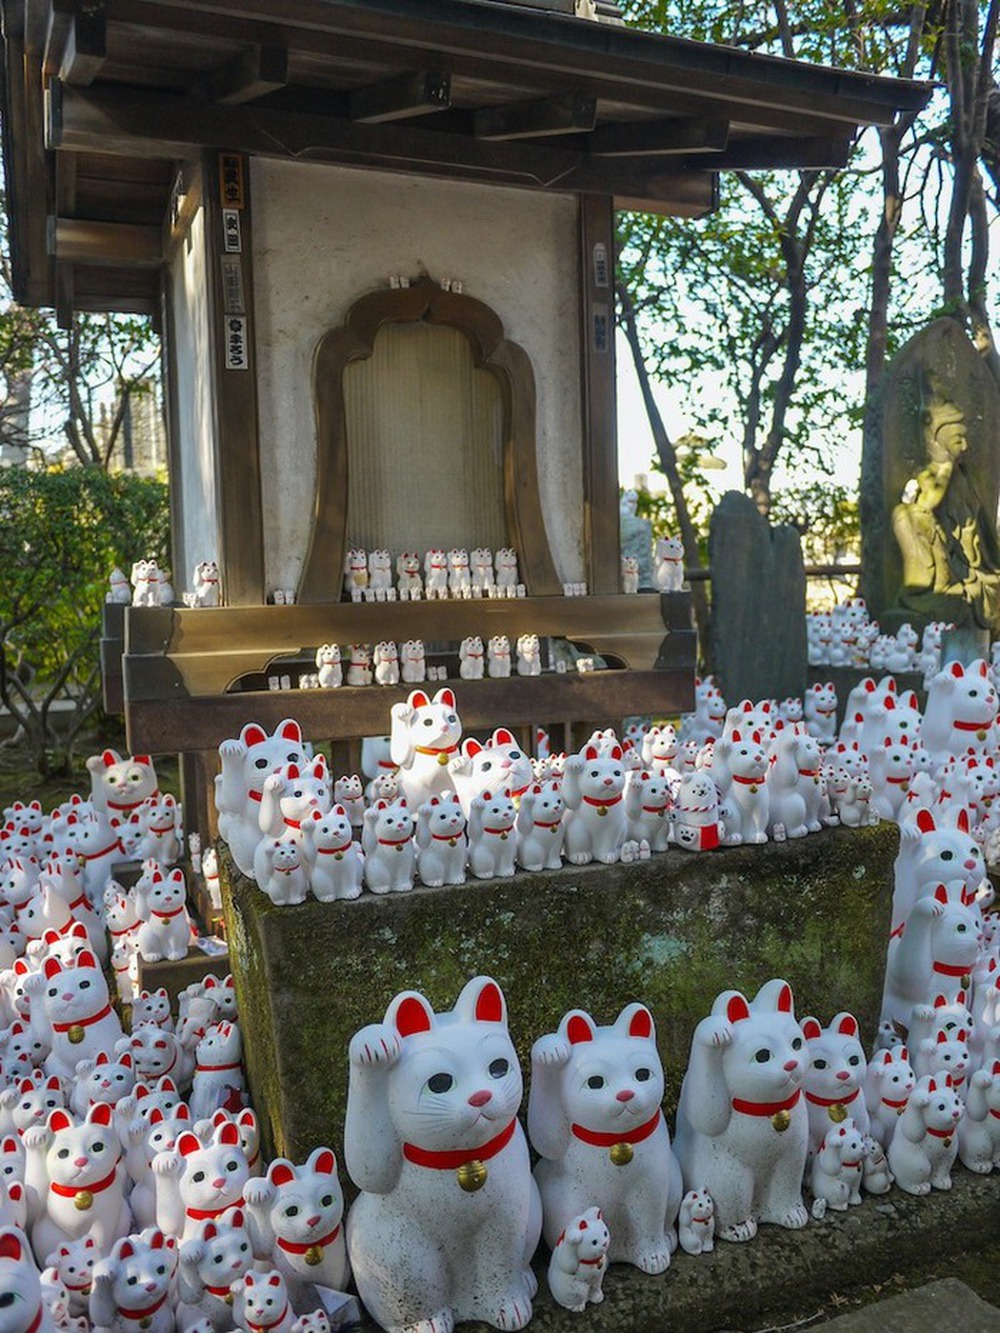 Câu chuyện thú vị về nguồn gốc ra đời tượng mèo Maneki-neko may mắn nổi tiếng của Nhật Bản - Ảnh 9.